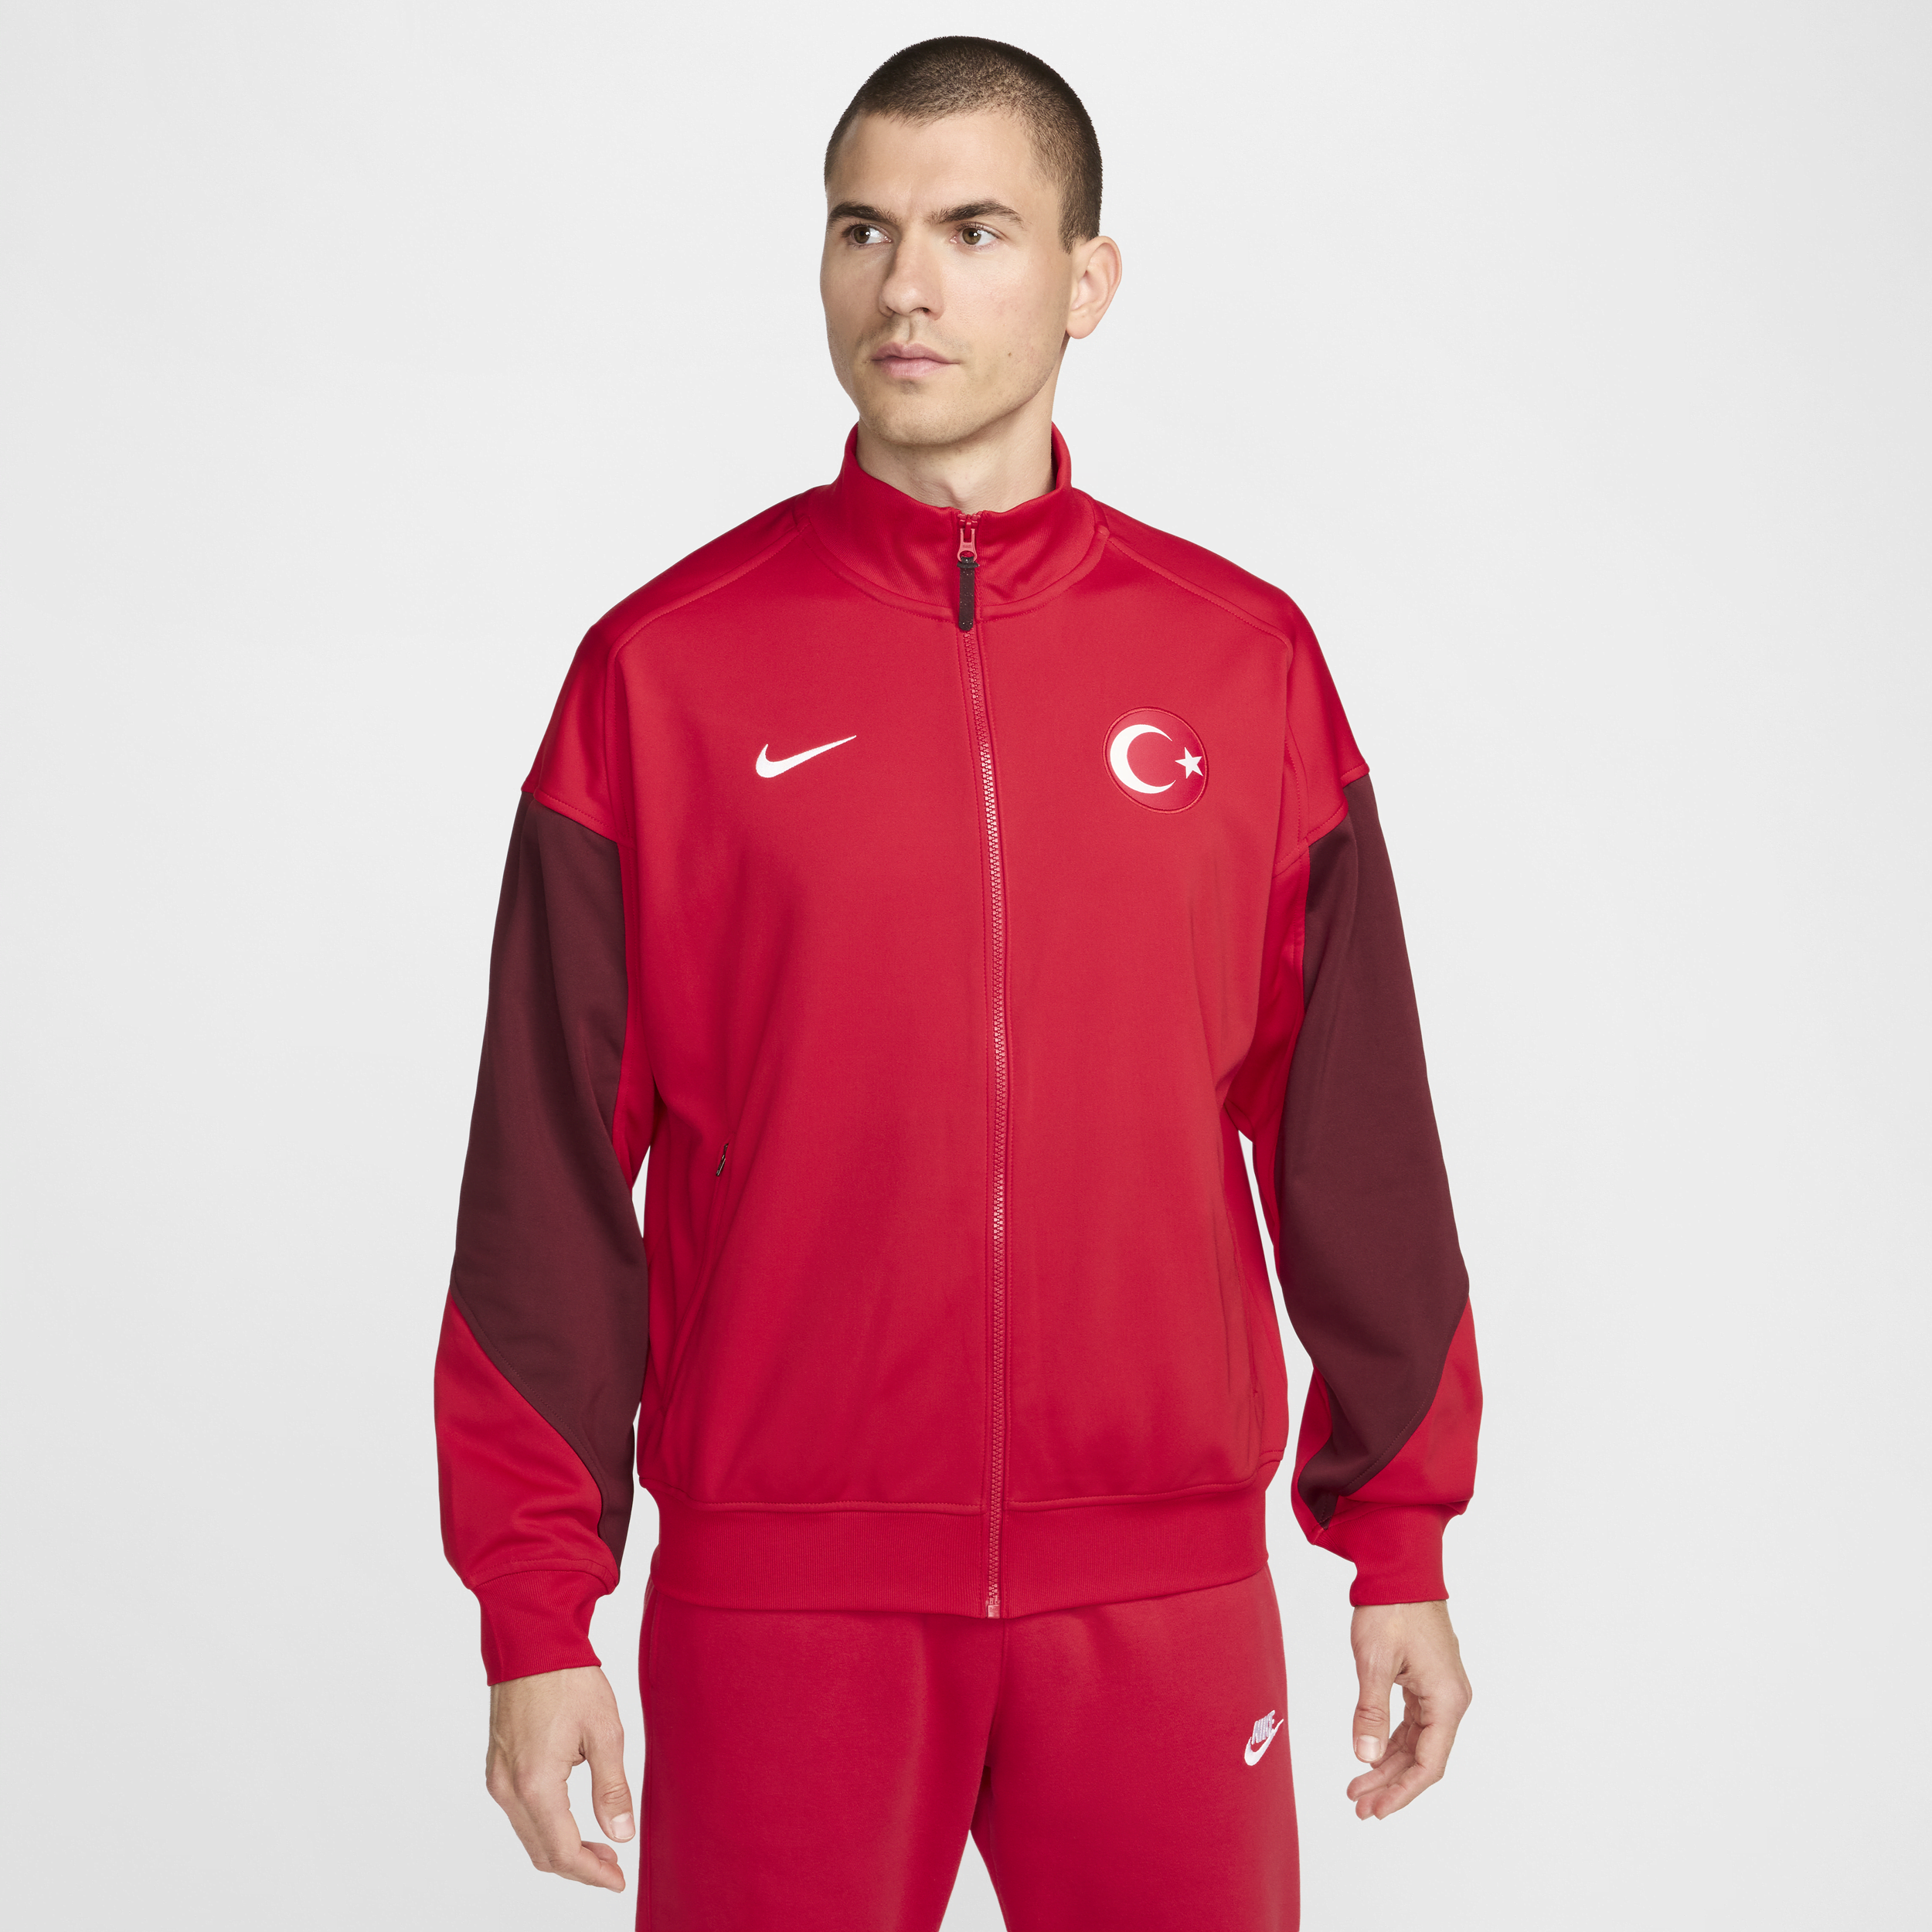 Giacca da calcio Nike Turchia Academy Pro – Uomo - Rosso